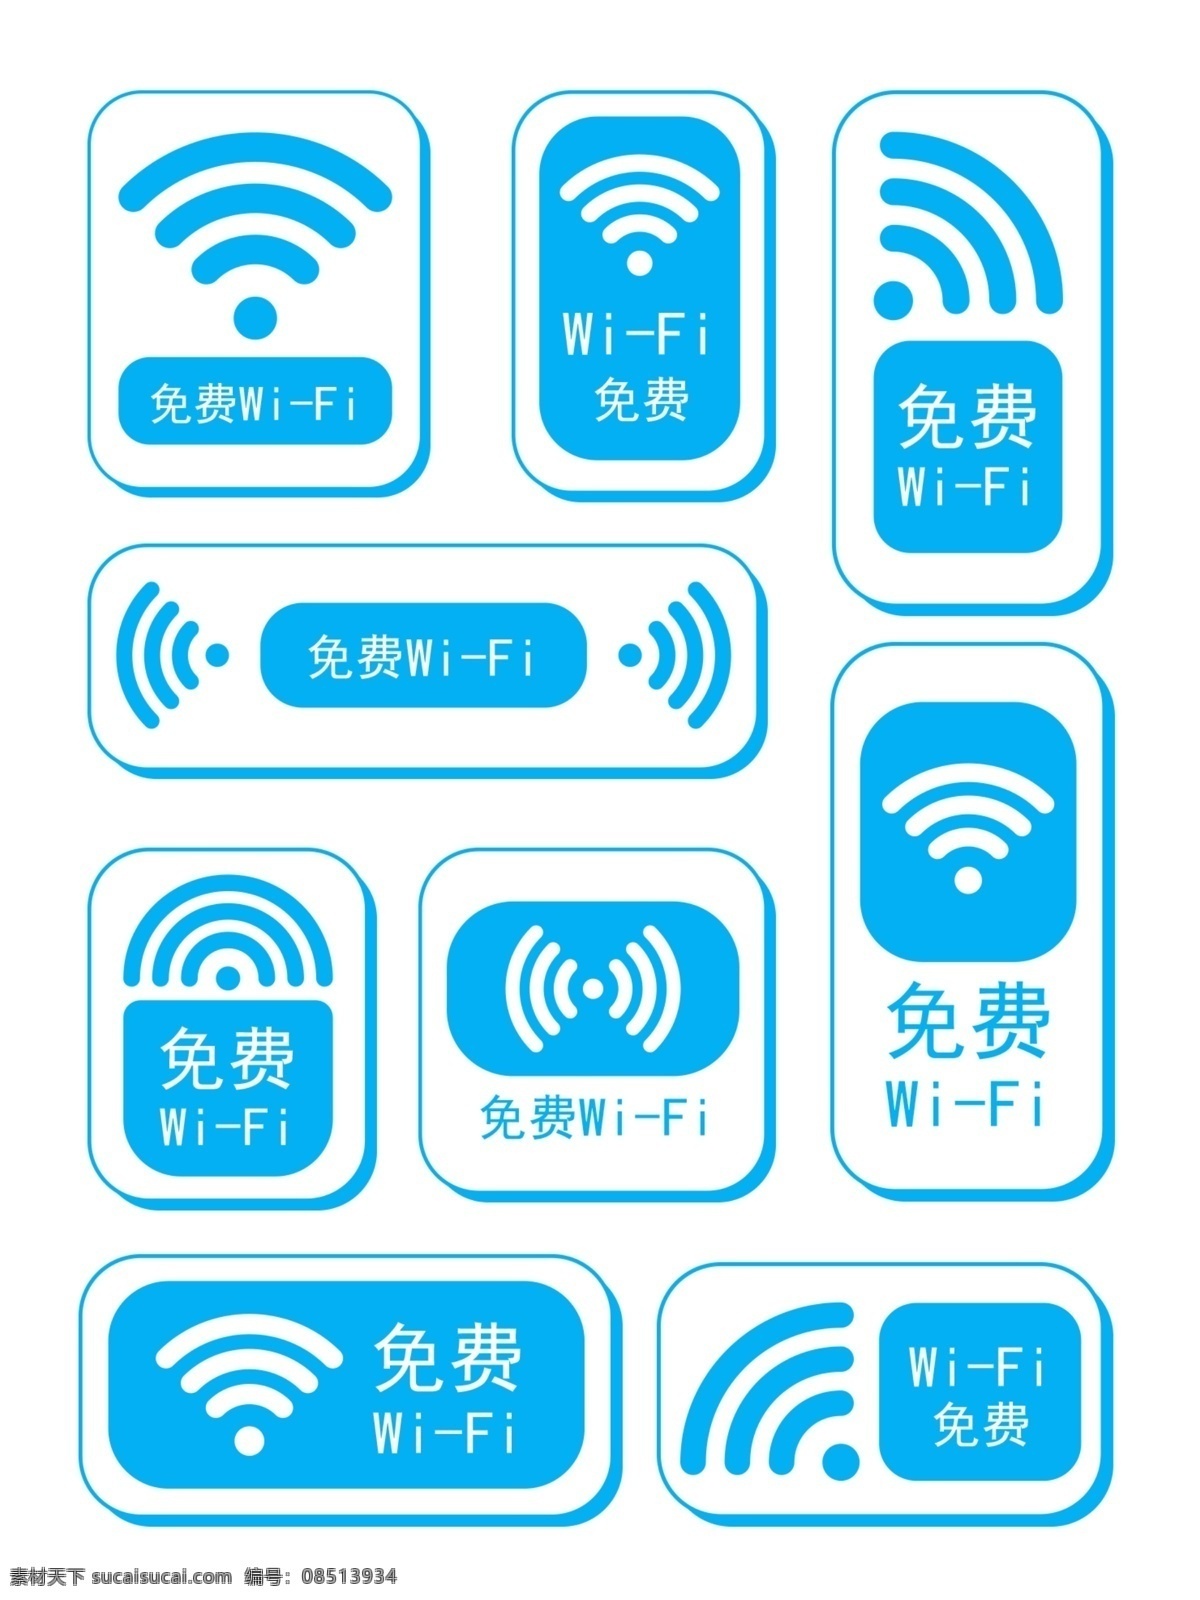 wifi标志 免费wifi wifi标识 wifi logo wifi图标 无线wifi wifi共享 wifi提示 无线网络 网络覆盖 无线网 wifi标示 wifi信号